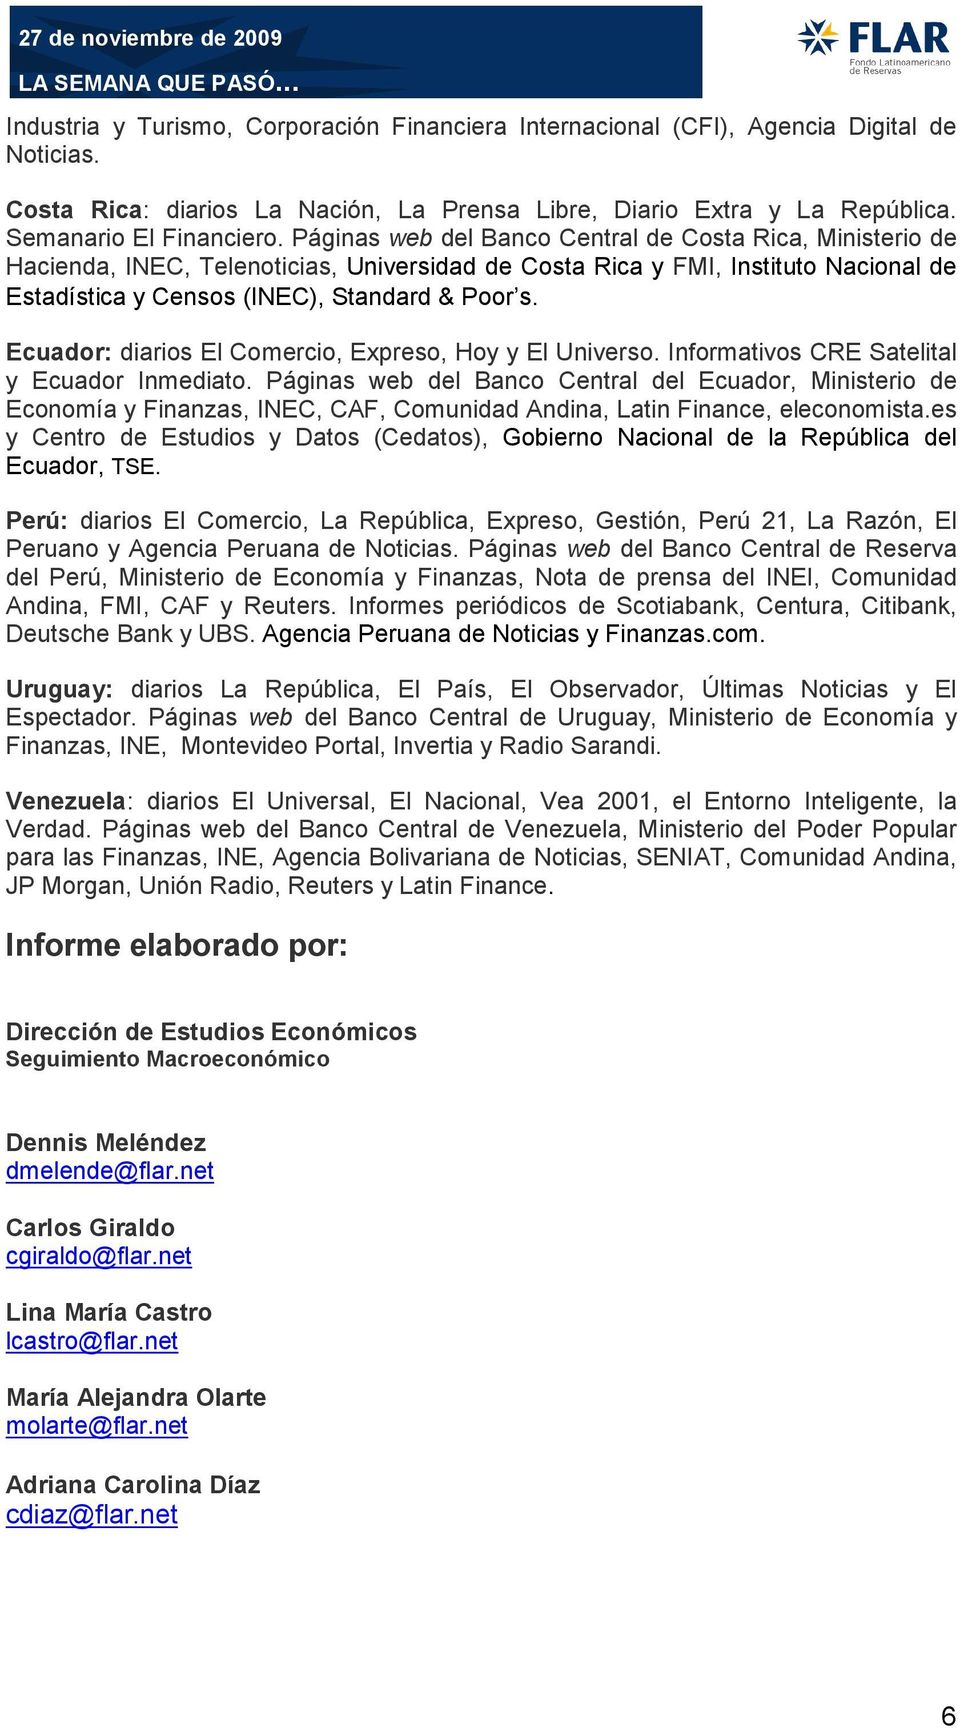 Ecuador: diarios El Comercio, Expreso, Hoy y El Universo. Informativos CRE Satelital y Ecuador Inmediato.